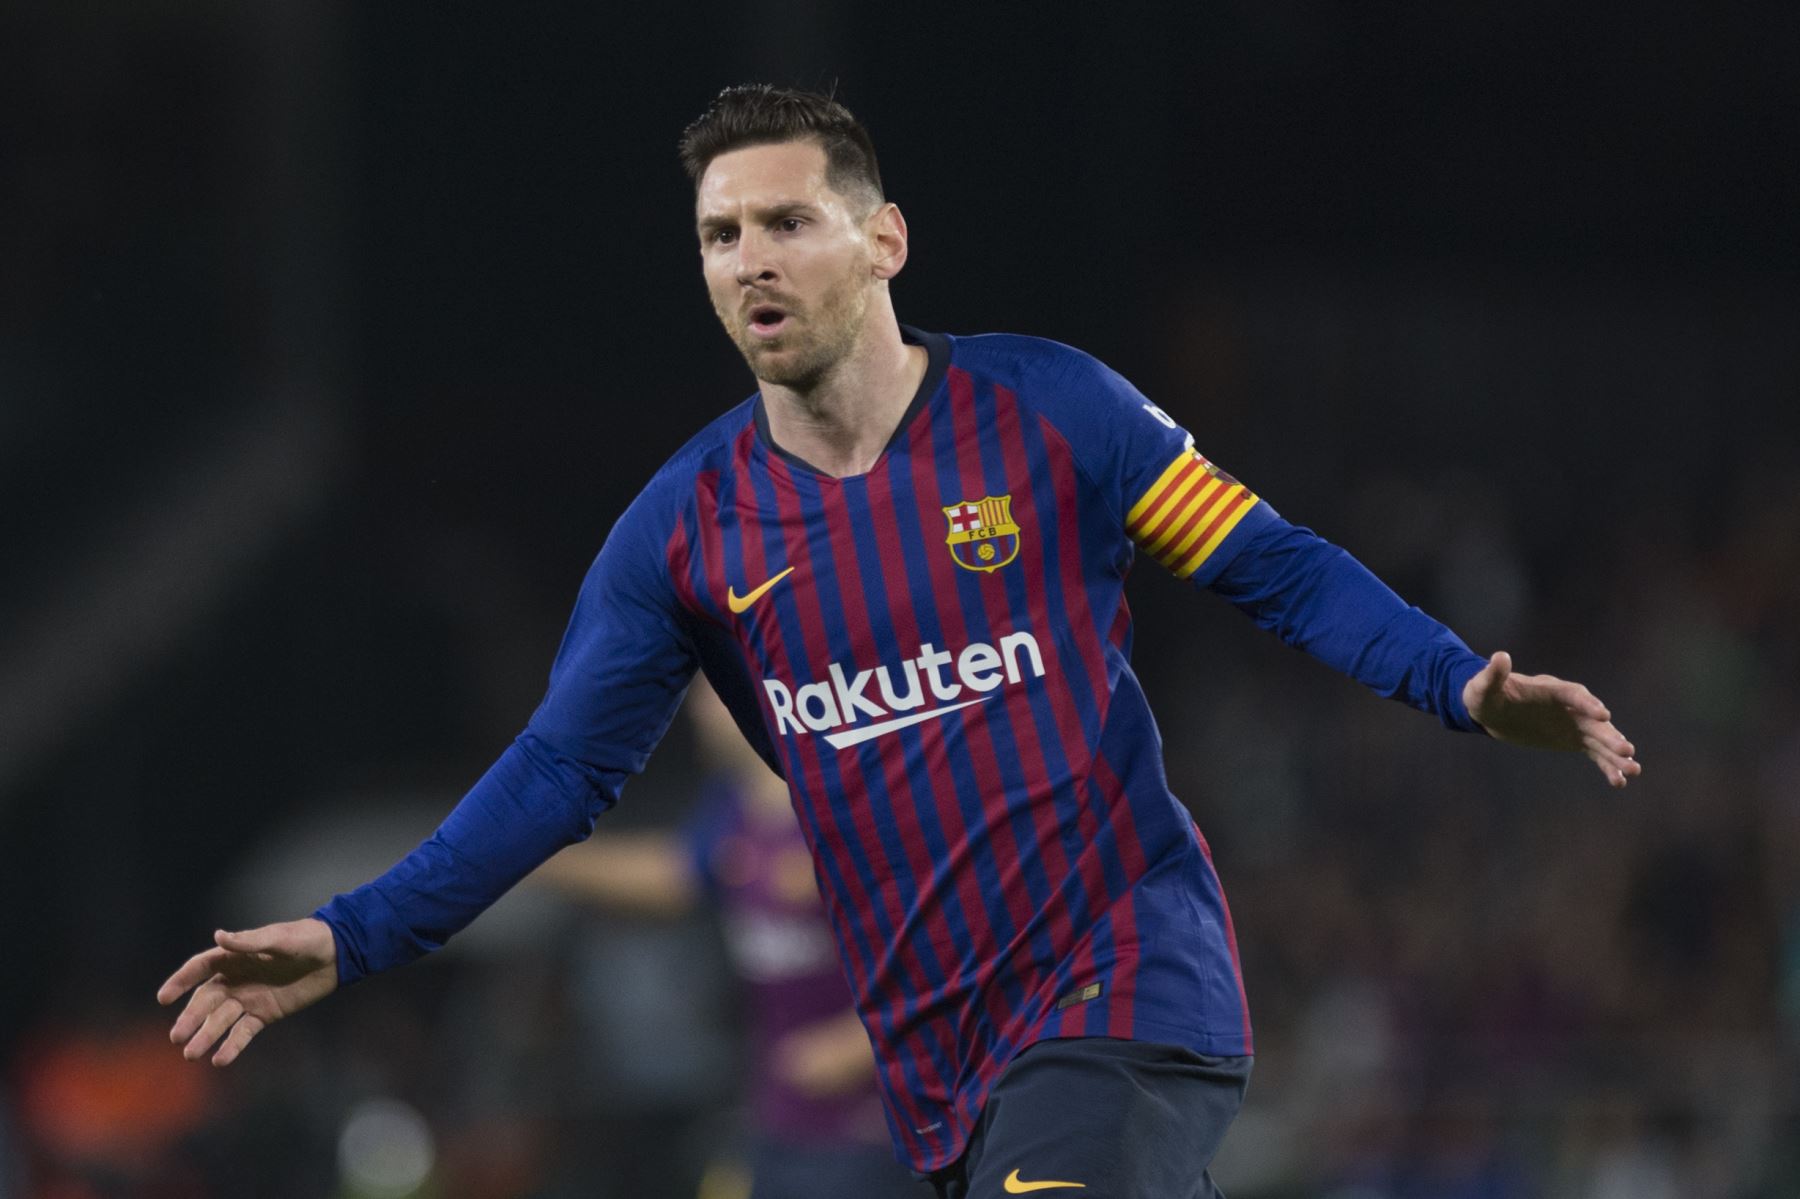 El delantero argentino de Barcelona Lionel Messi celebra el gol de apertura durante el partido de fútbol de la liga española entre el Real Betis y el FC Barcelona.Foto:AFP